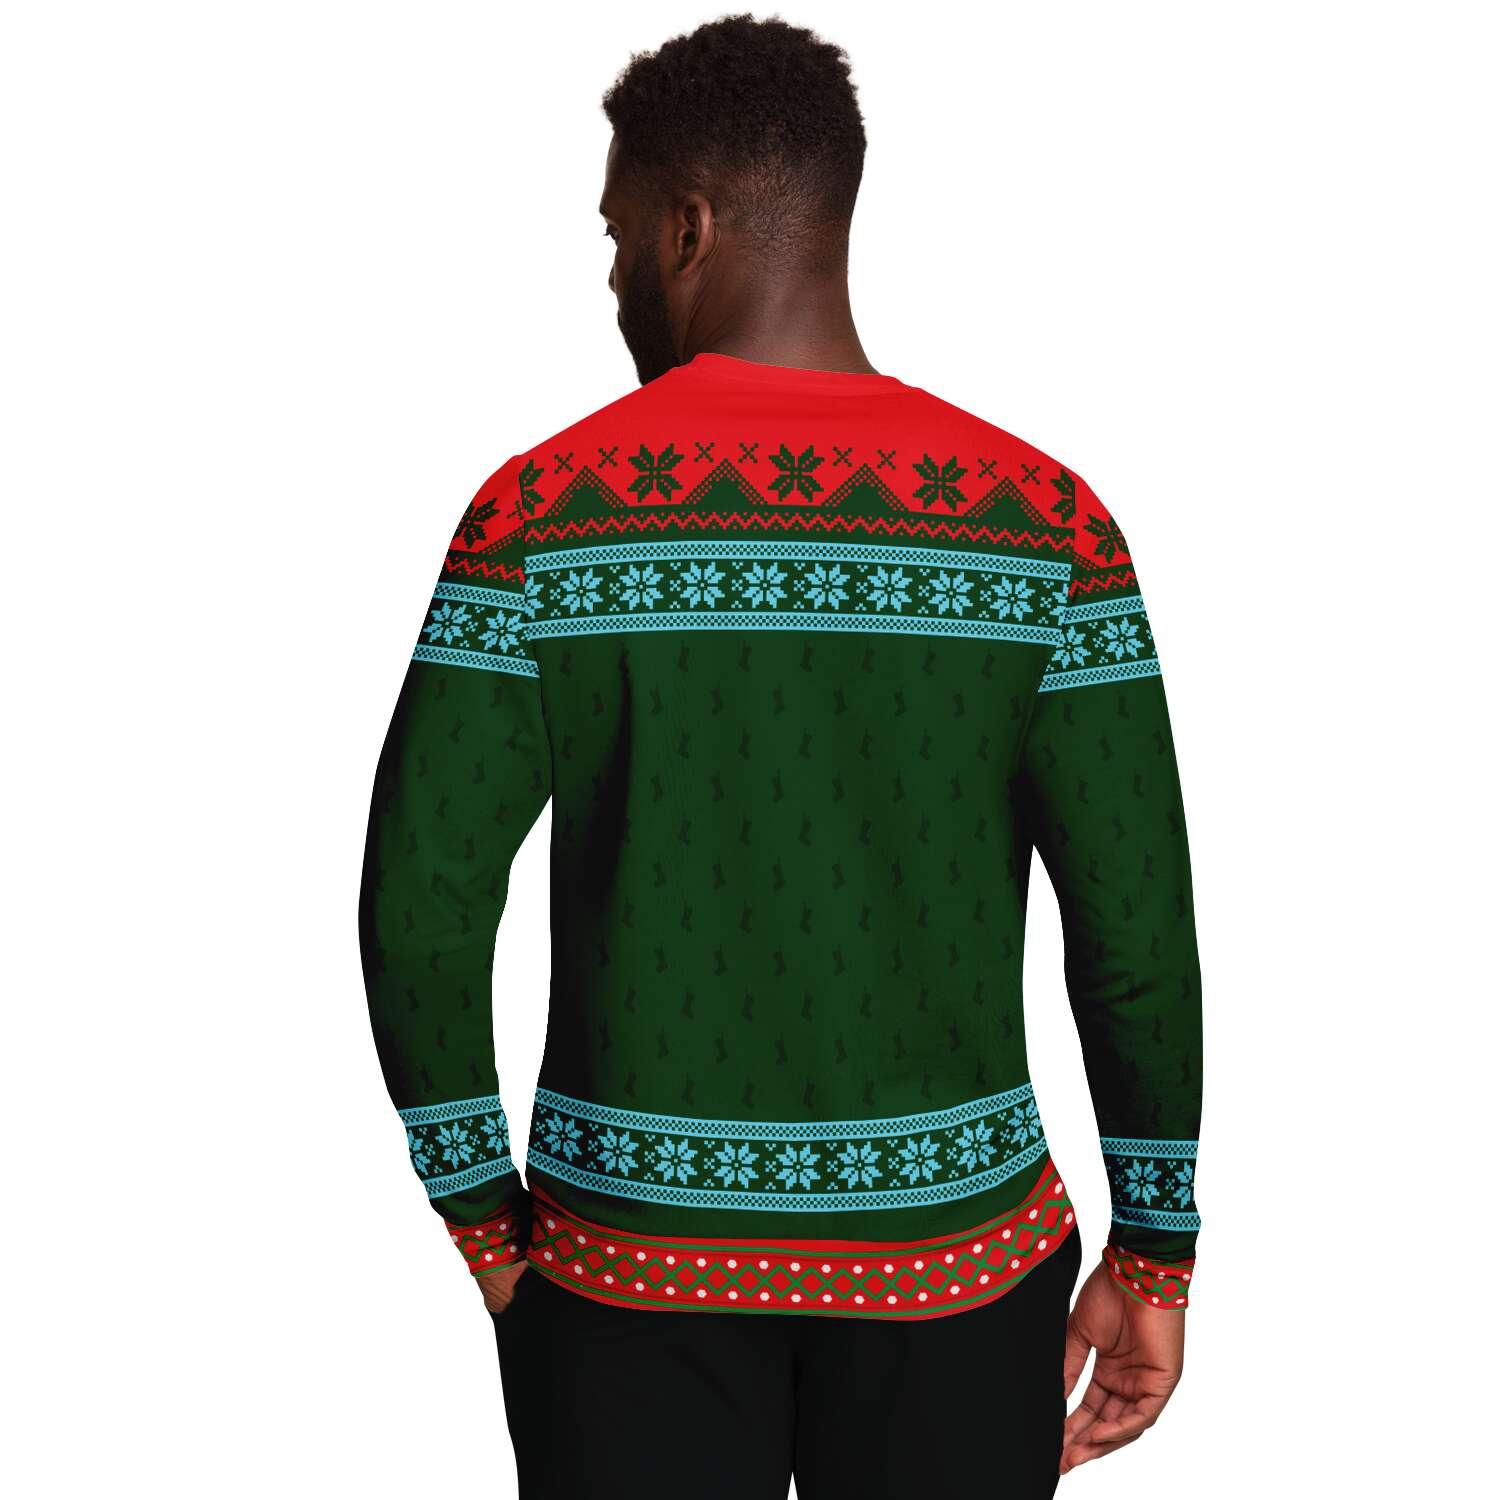 Teachers always make the Nice list Unisex Ugly Christmas Sweatshirt - TopKoalaTee